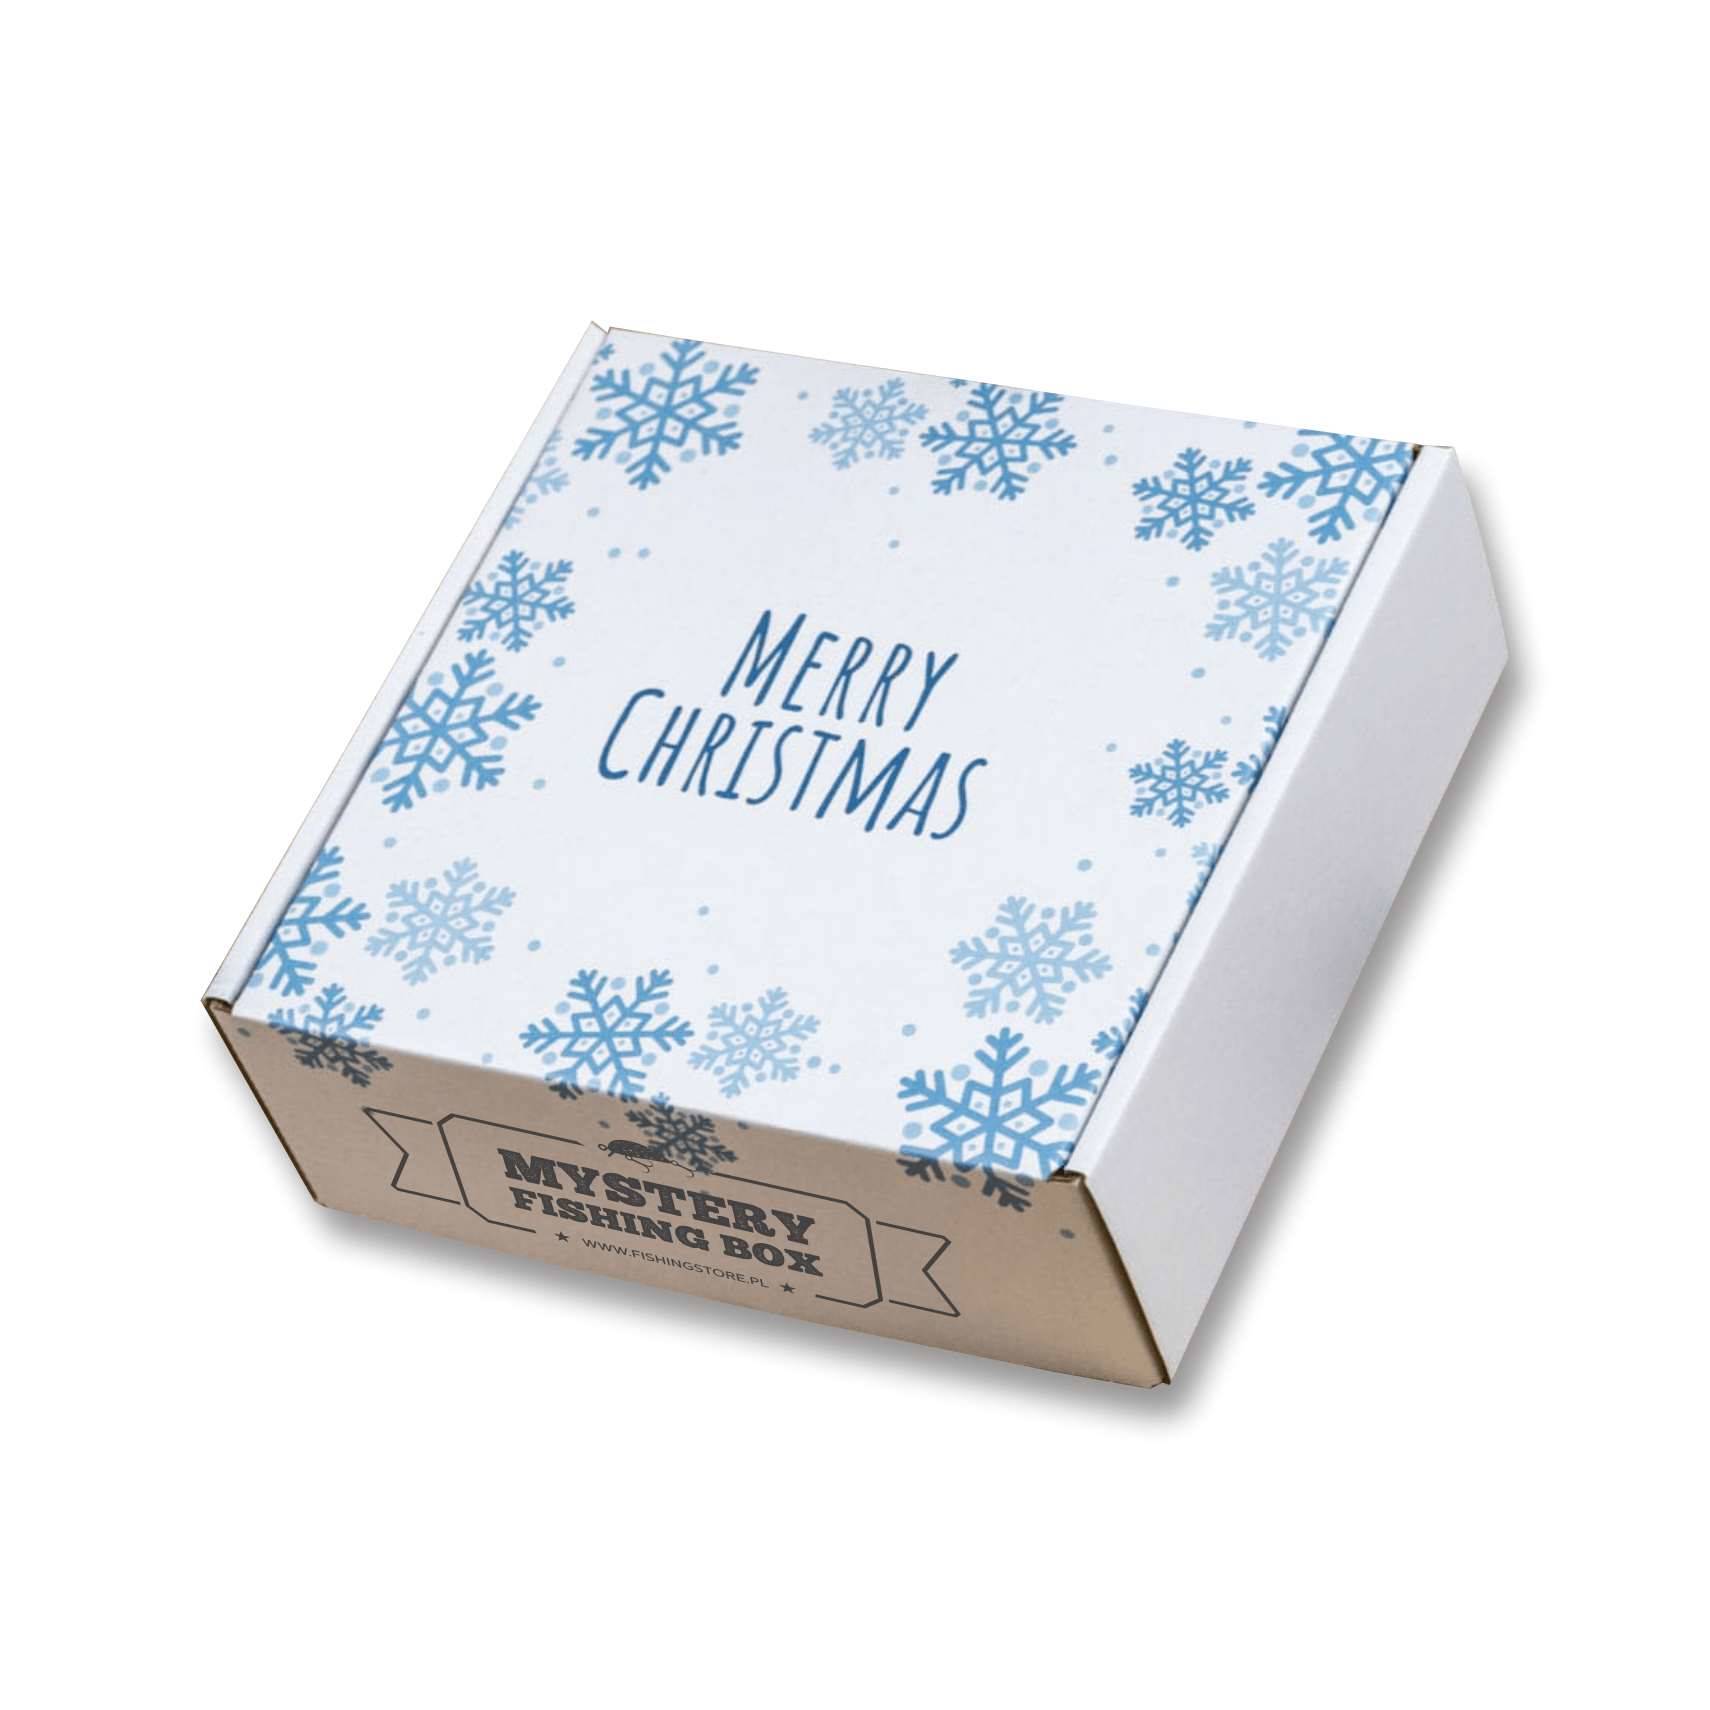 Tajemnicze pudło przynęt  - MYSTERY CHRISTMAS BOX